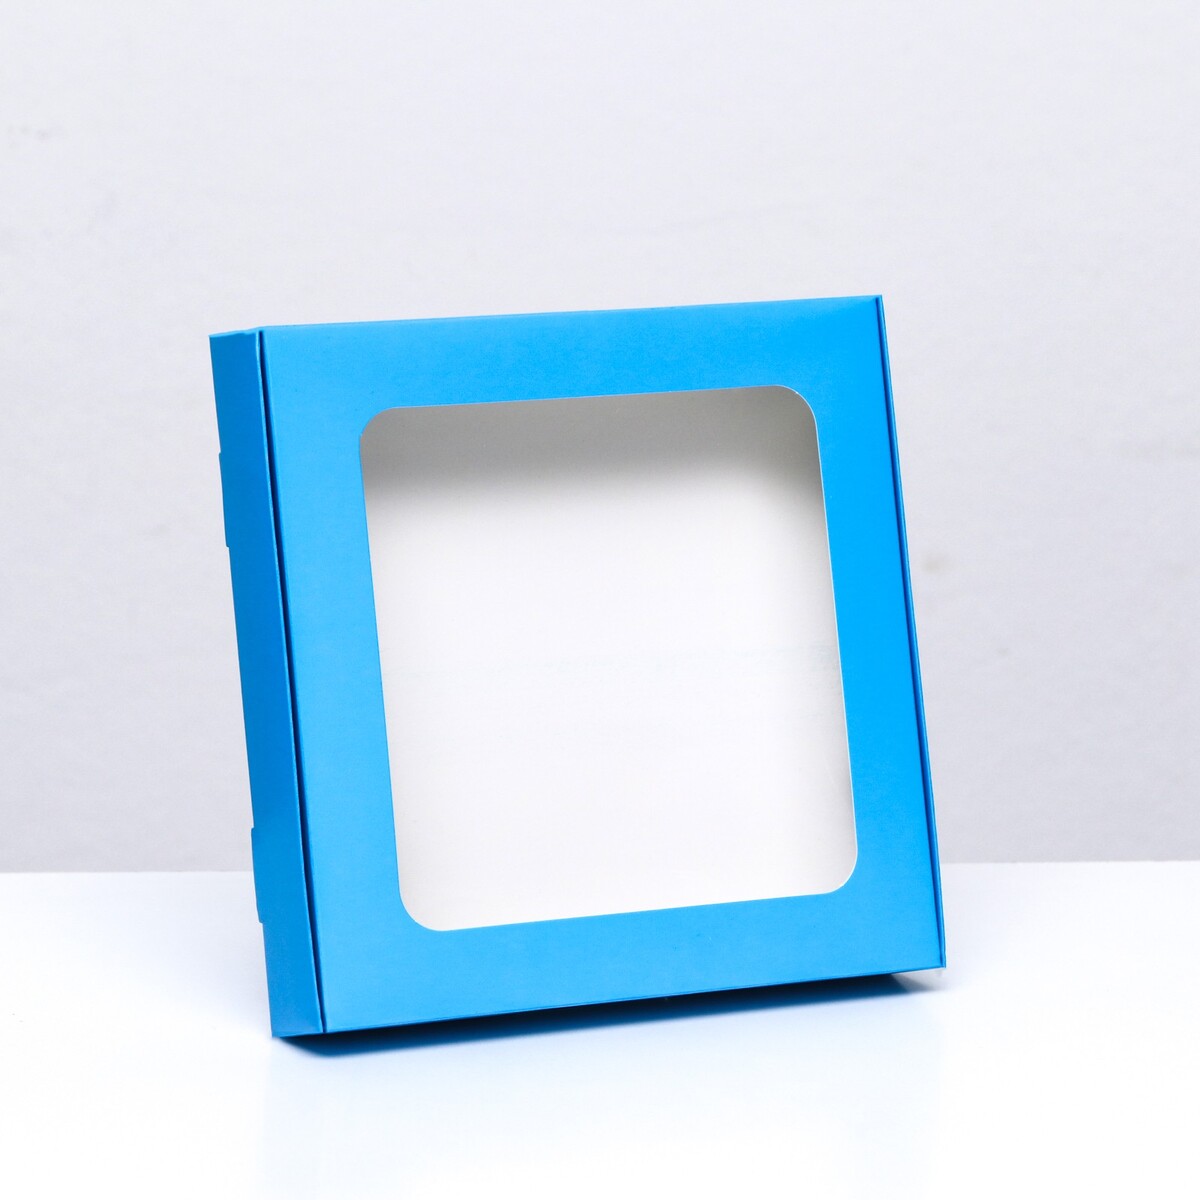 Коробка самосборная с окном синяя, 16 х 16 х 3 см кубики методики зайцева собранные синяя коробка картон